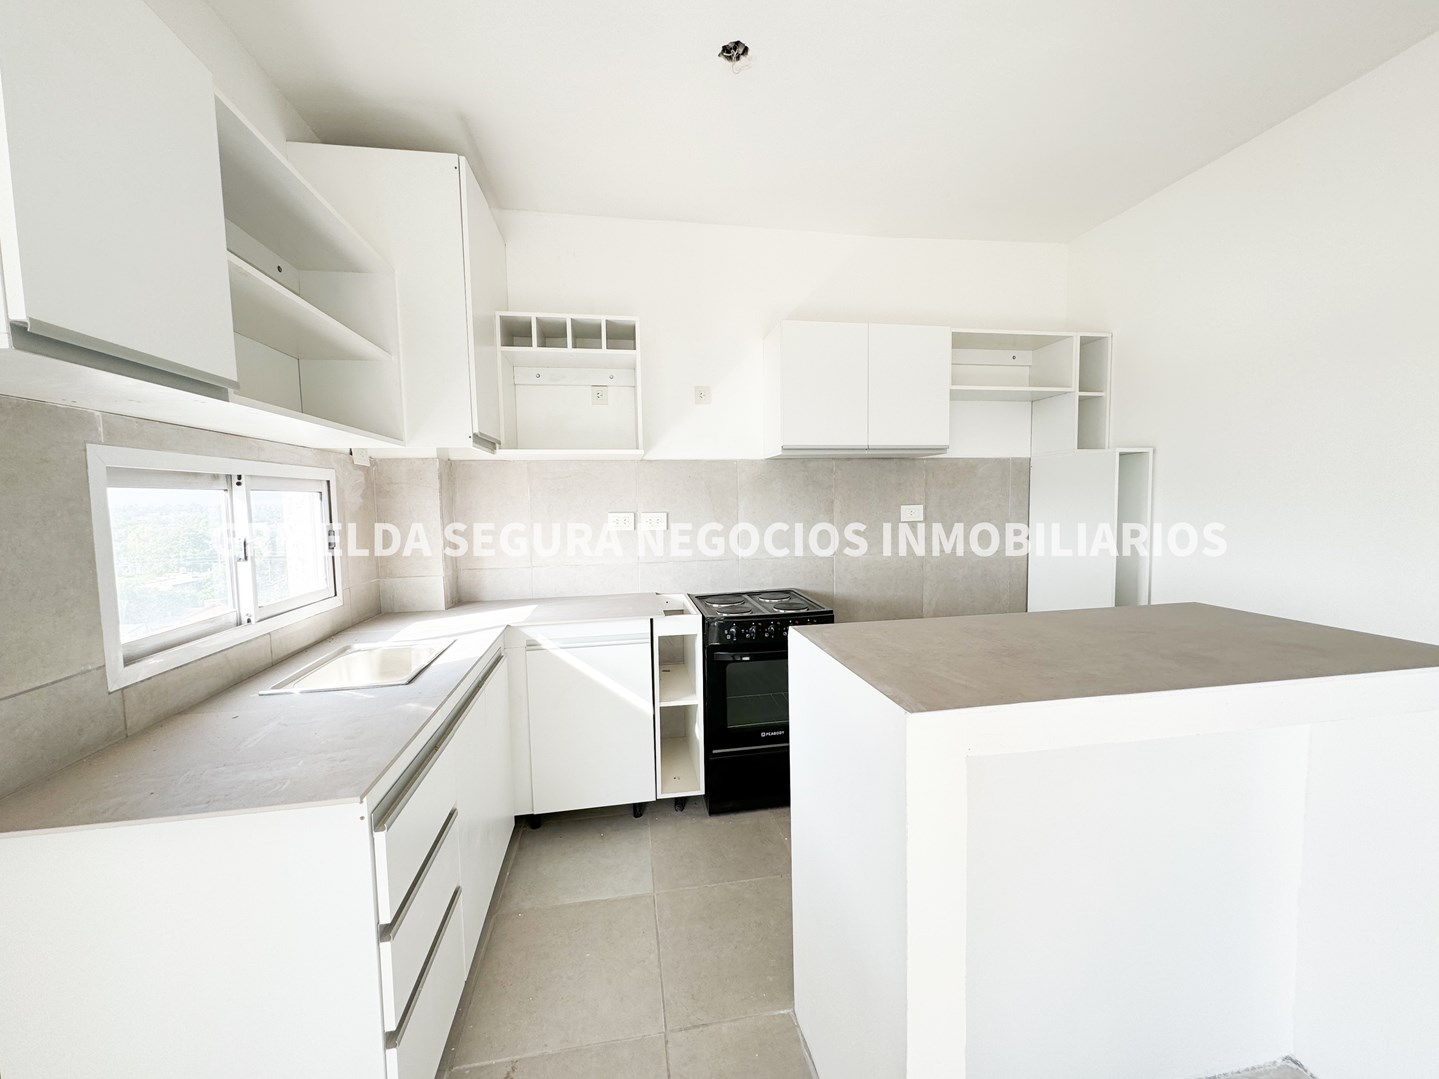 #5014144 | Alquiler | Departamento | Pilar (Griselda Segura Negocios Inmobiliarios)